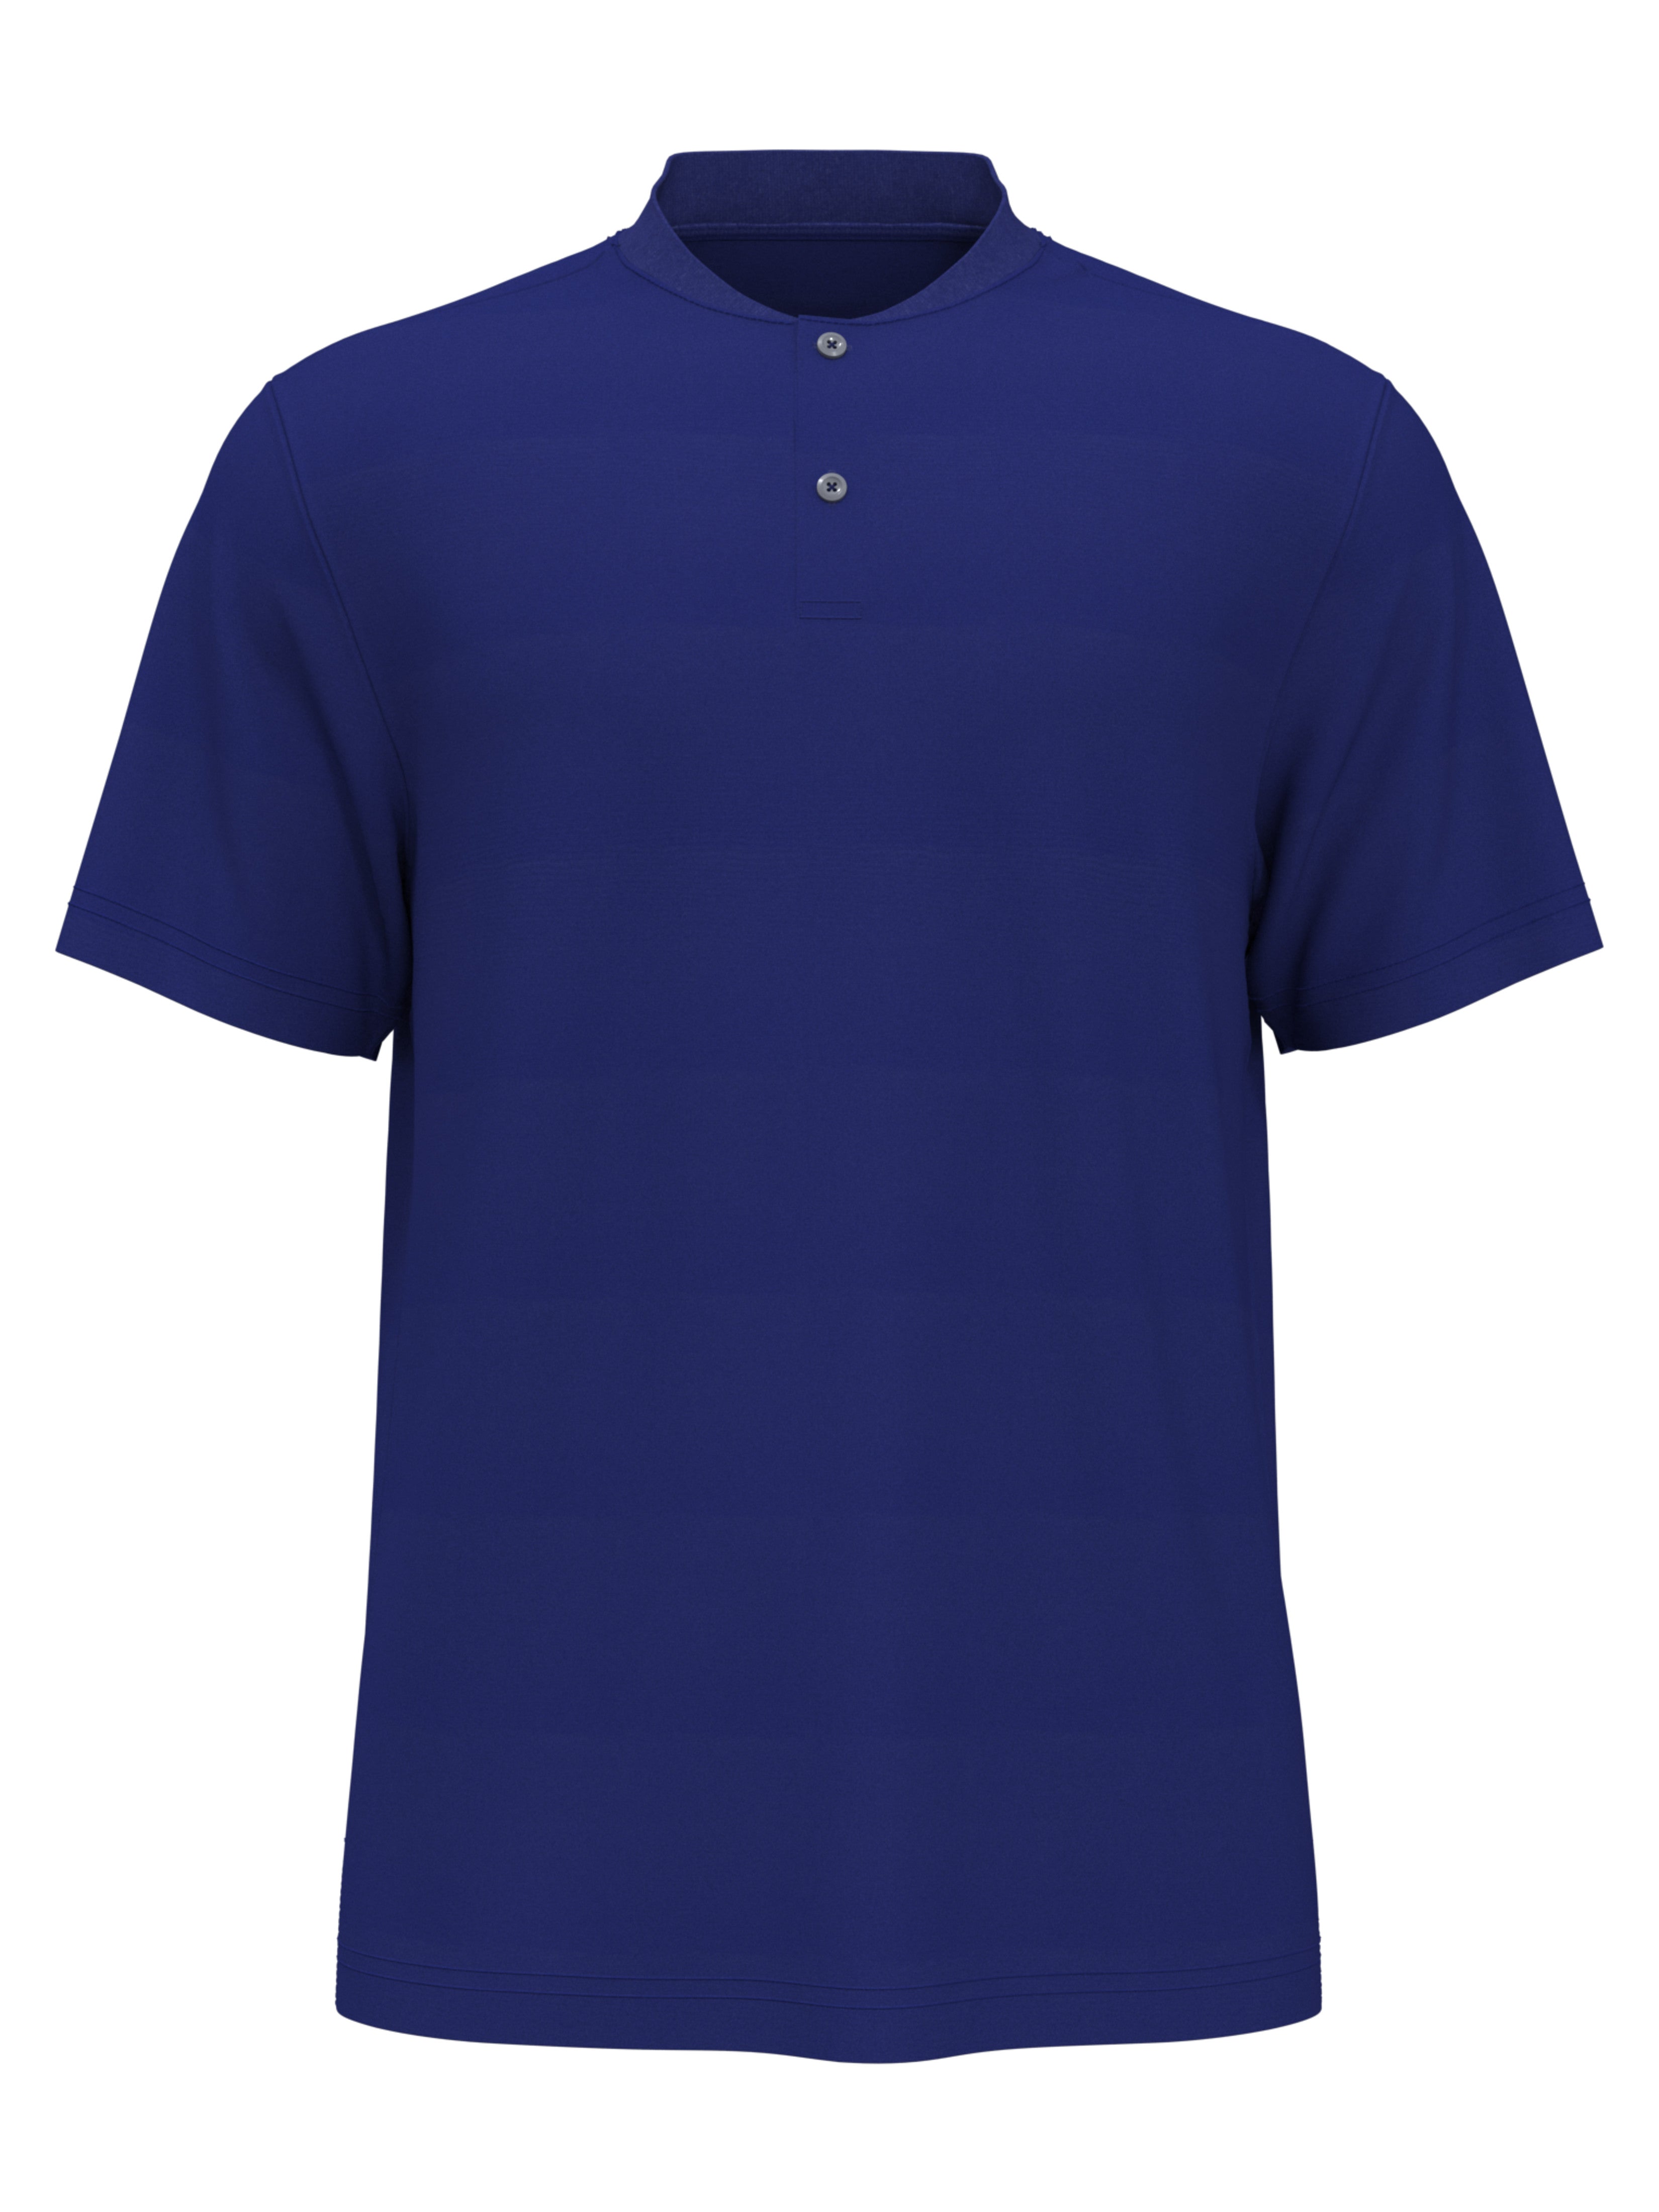 PGA TOUR Apparel Boys Edge Collar Pique Golf Polo Shirt, Size Medium, Turkish Sea Blue, 100% Polyester | Golf Apparel Shop